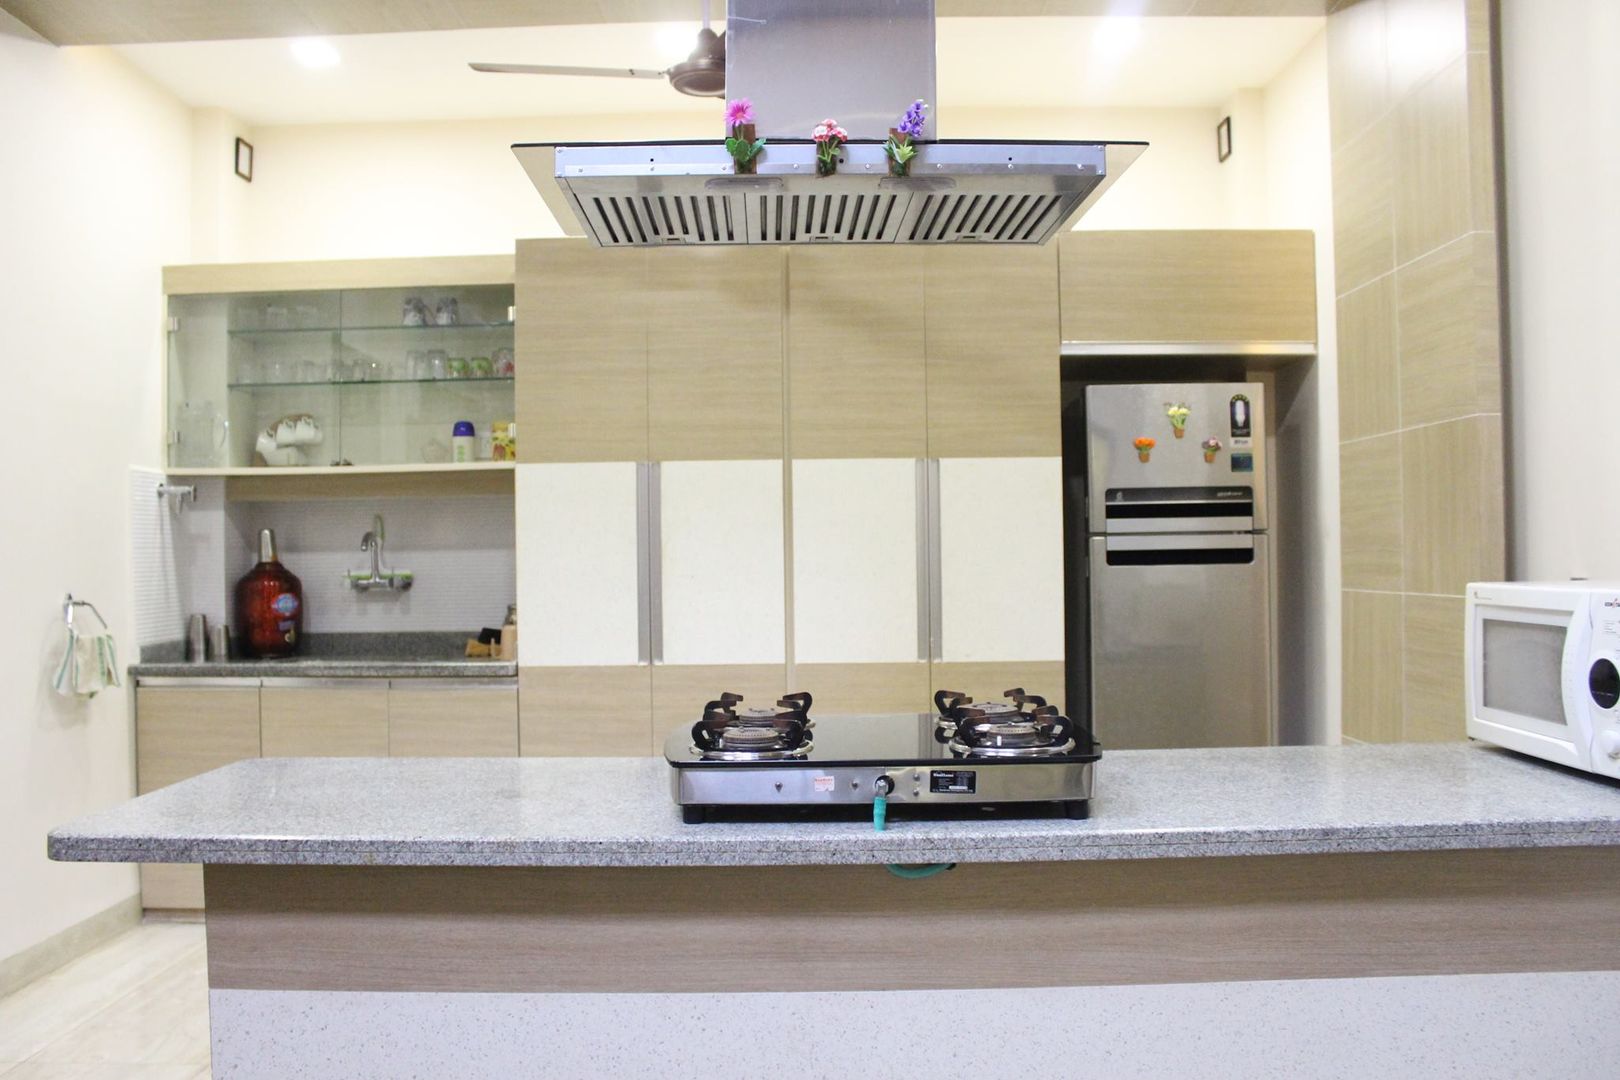 Duplex in Indore, Shadab Anwari & Associates. Shadab Anwari & Associates. Kitchen